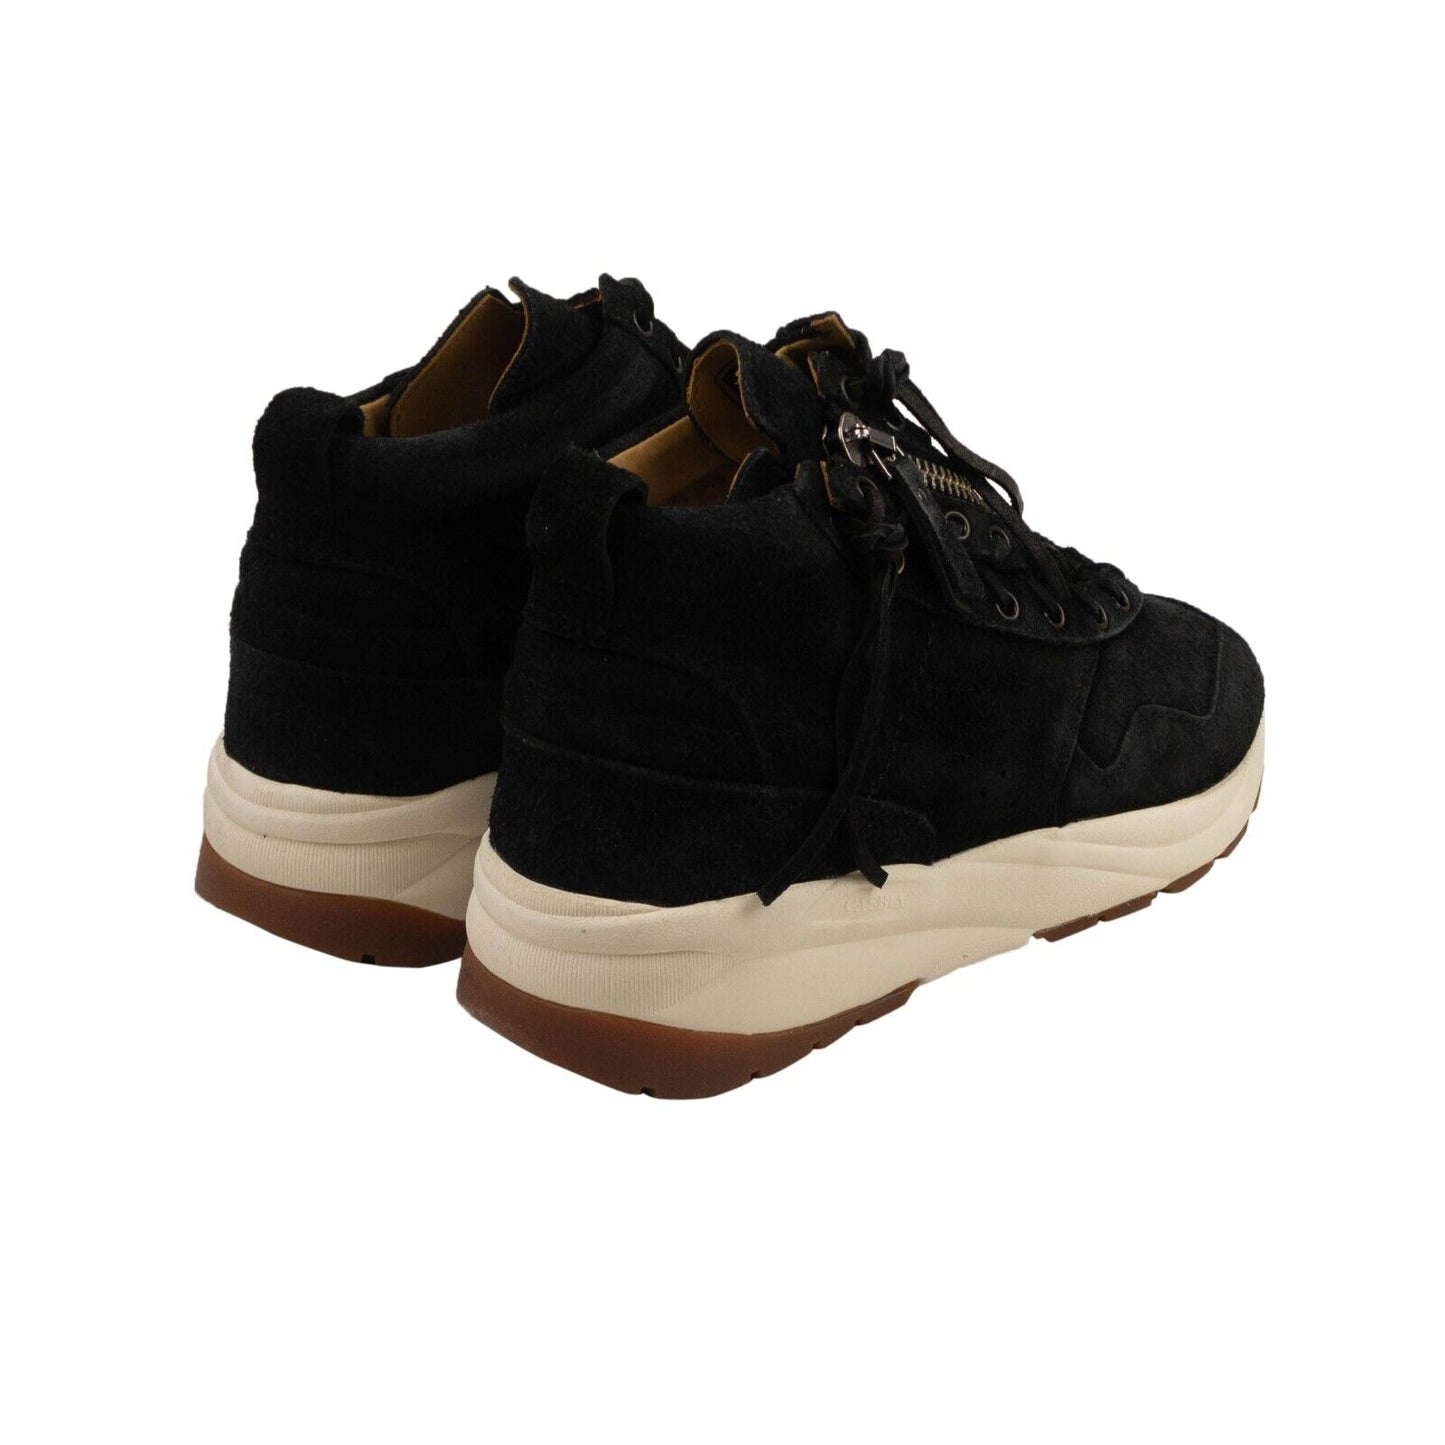 Casbia Awol Ap Sneakers - Black